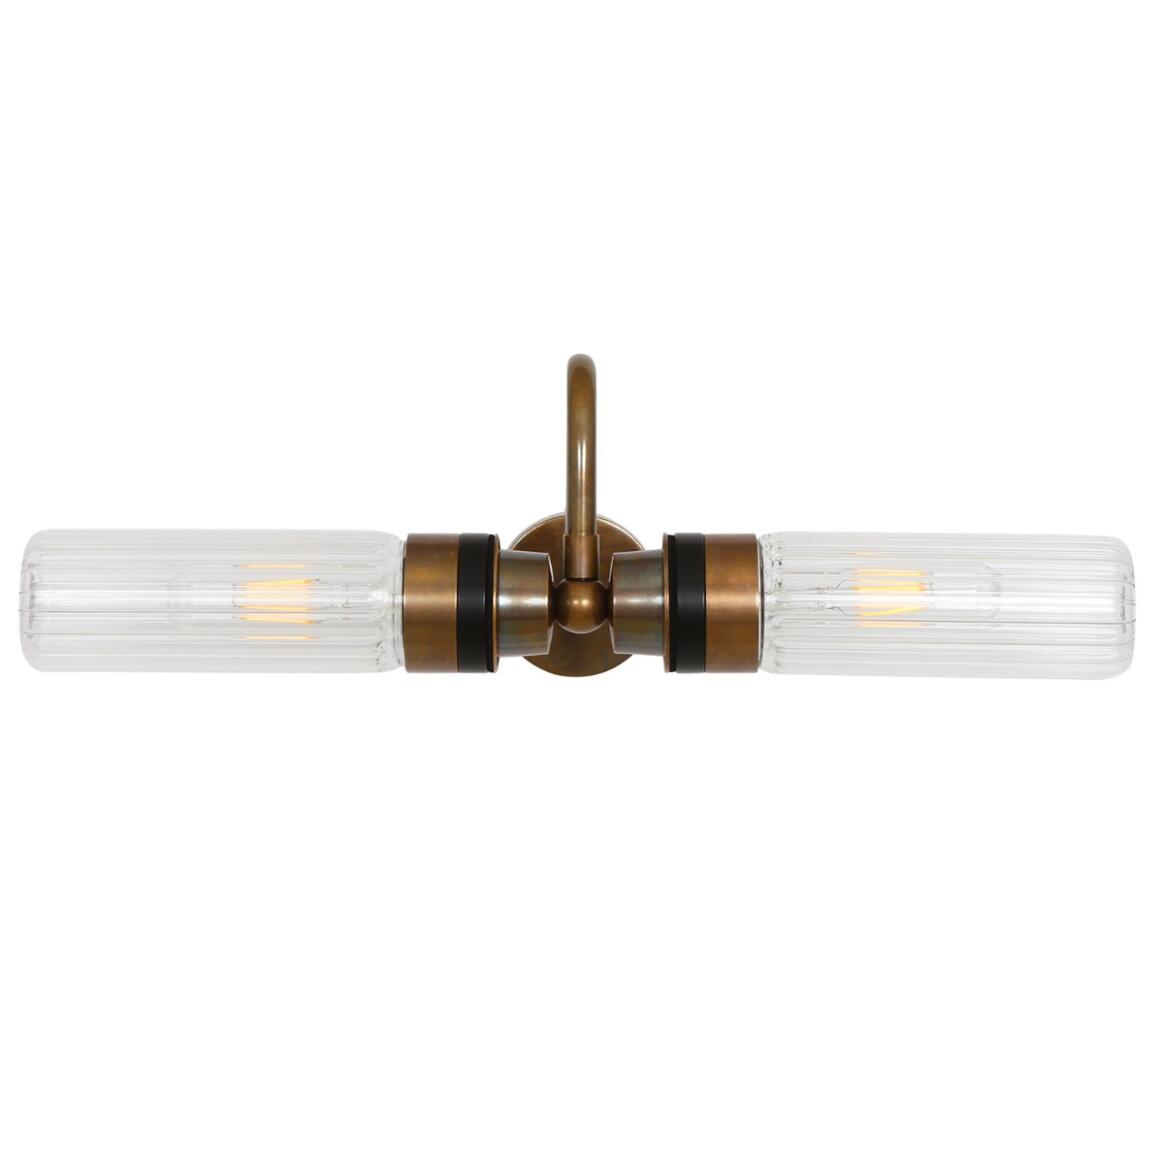 Ren Modern Brass / Glass Bathroom Wall Light IP65